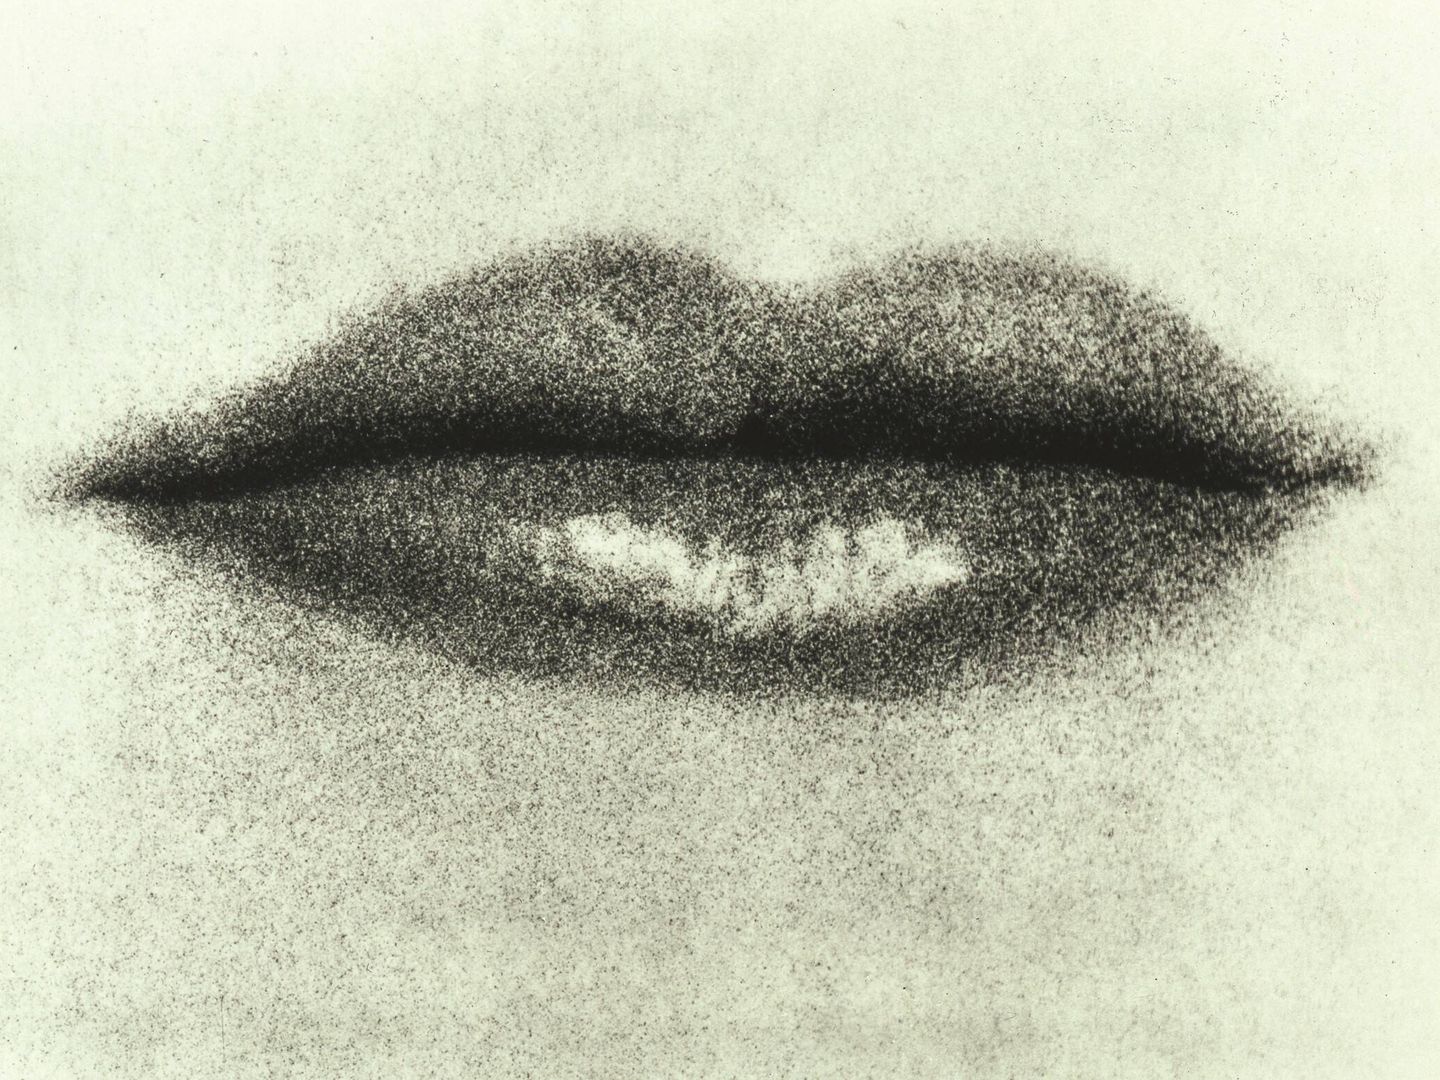 'Los labios de Lee Miller', fotografía de Man Ray.